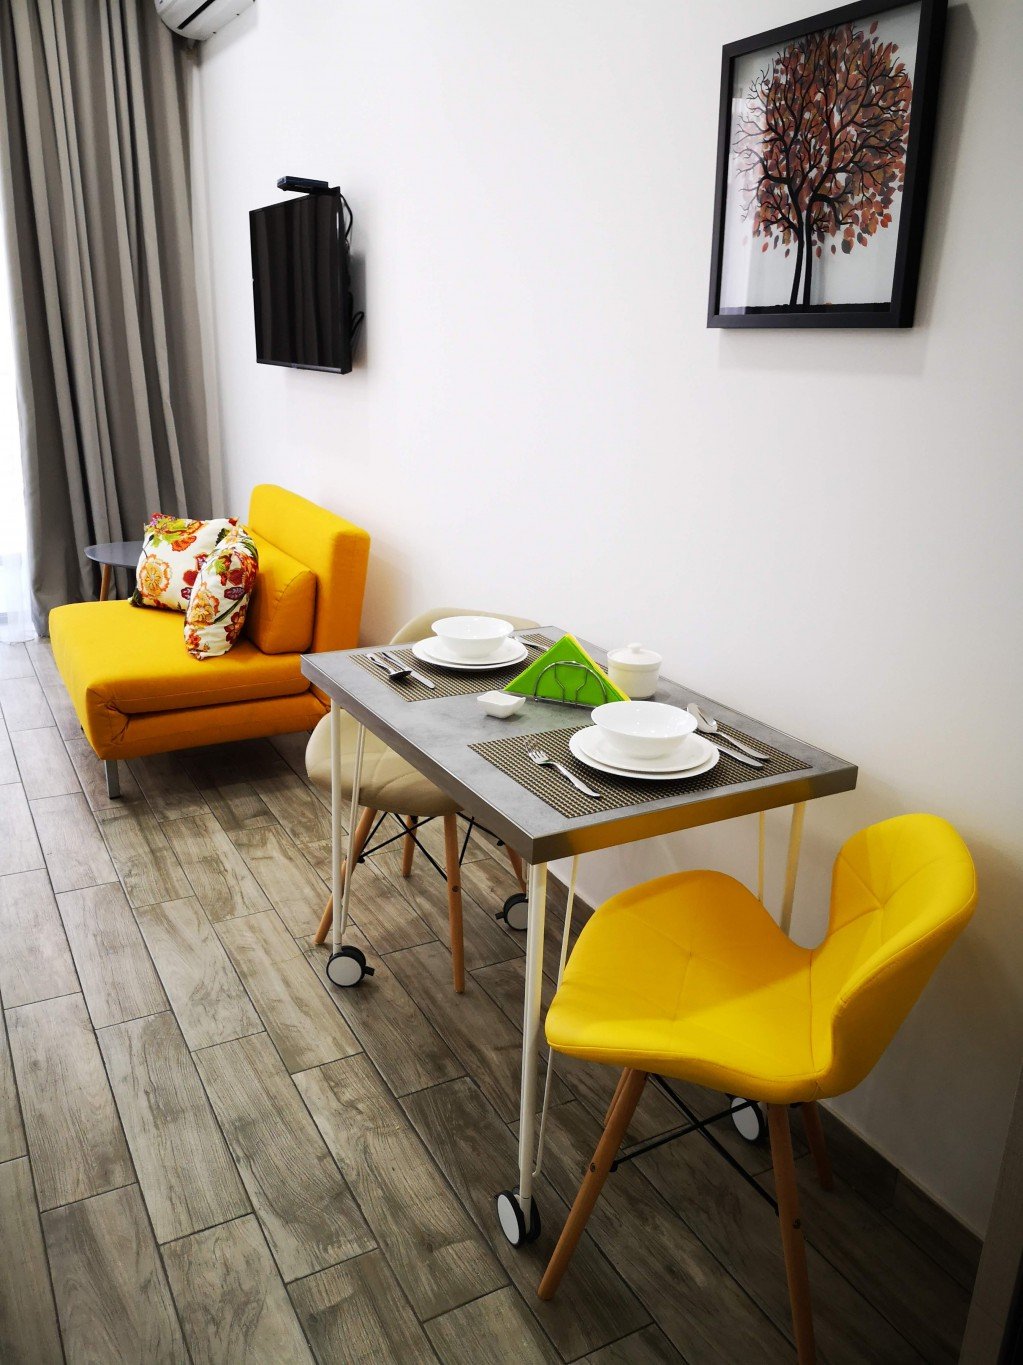 Studio apartment in Next Orange apart-hotel id-1022 - Batumi Vacation Rentals